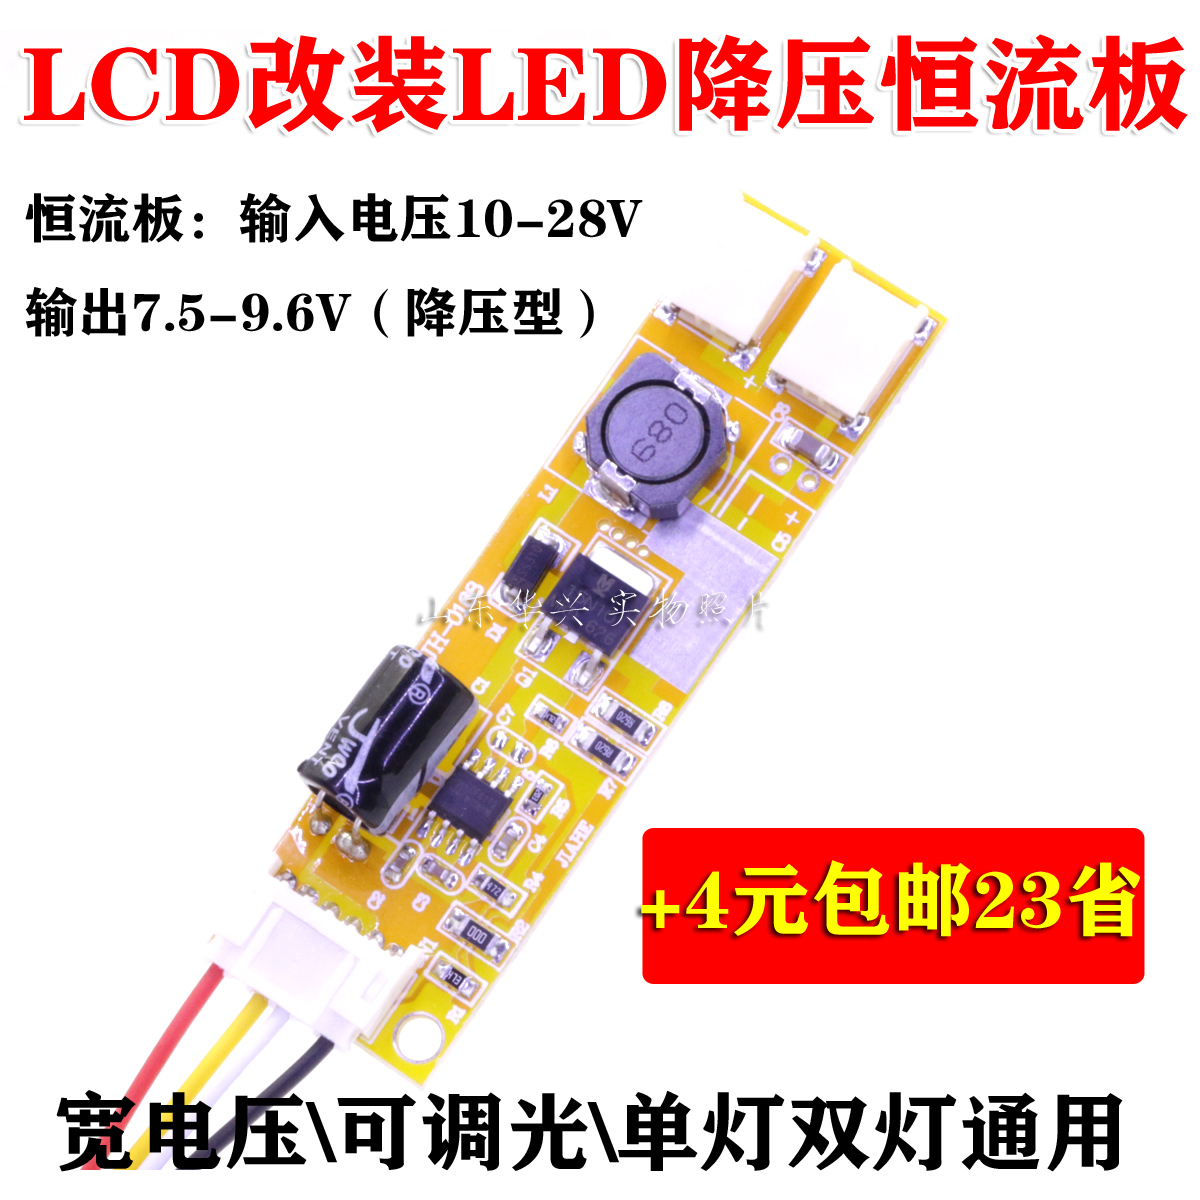 LCD改LED可调光亮度LED单双灯口液晶降压恒流板LED恒流驱动板含线